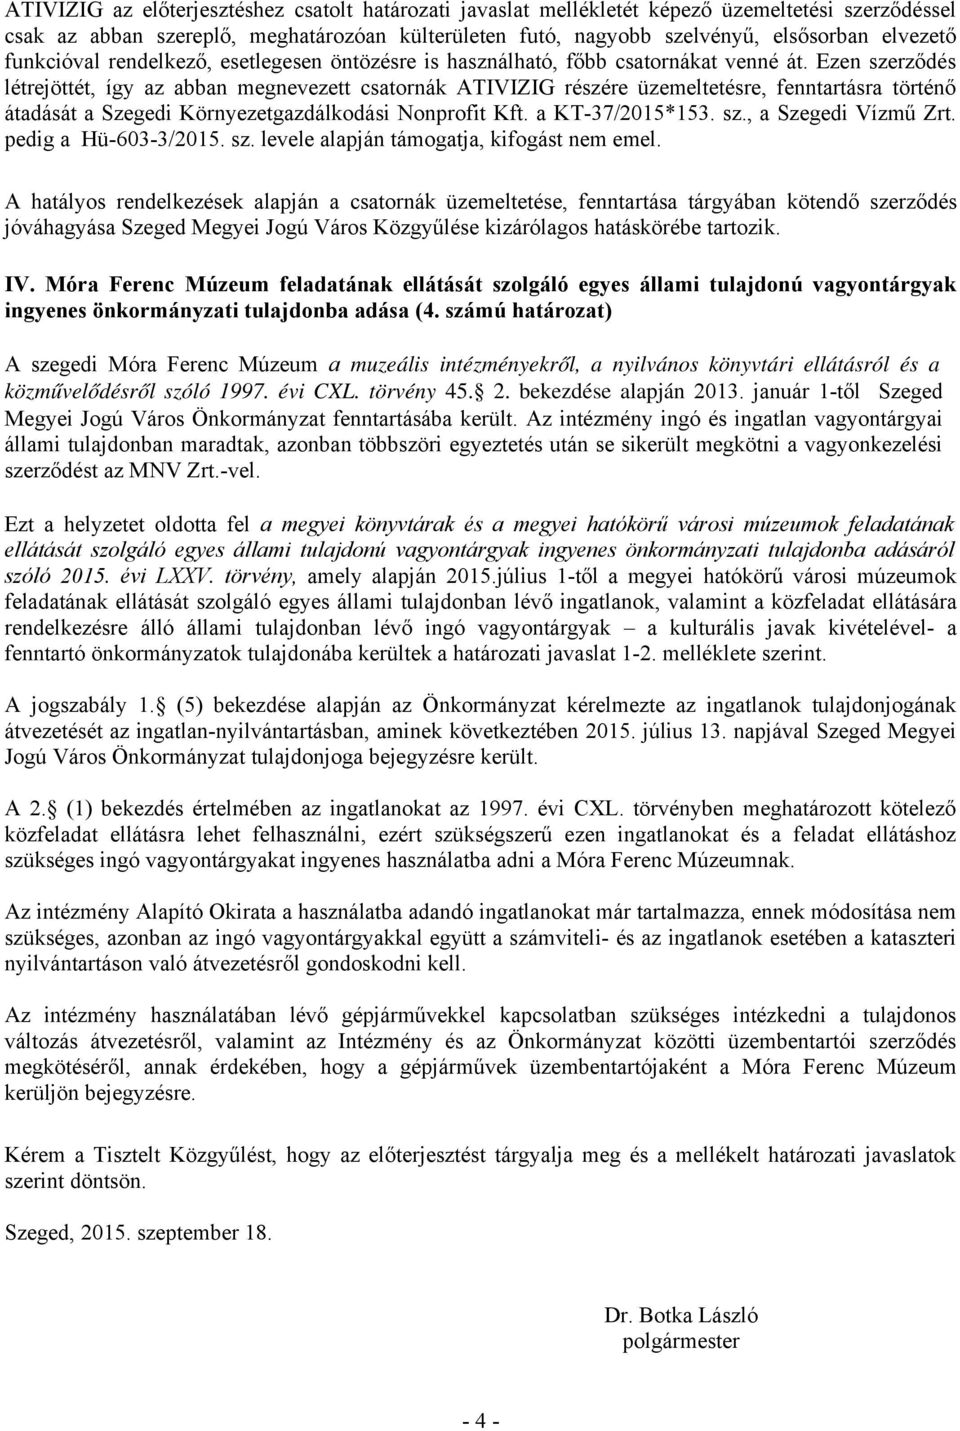 Ezen szerződés létrejöttét, így az abban megnevezett csatornák ATIVIZIG részére üzemeltetésre, fenntartásra történő átadását a Szegedi Környezetgazdálkodási Nonprofit Kft. a KT-37/2015*153. sz., a Szegedi Vízmű Zrt.